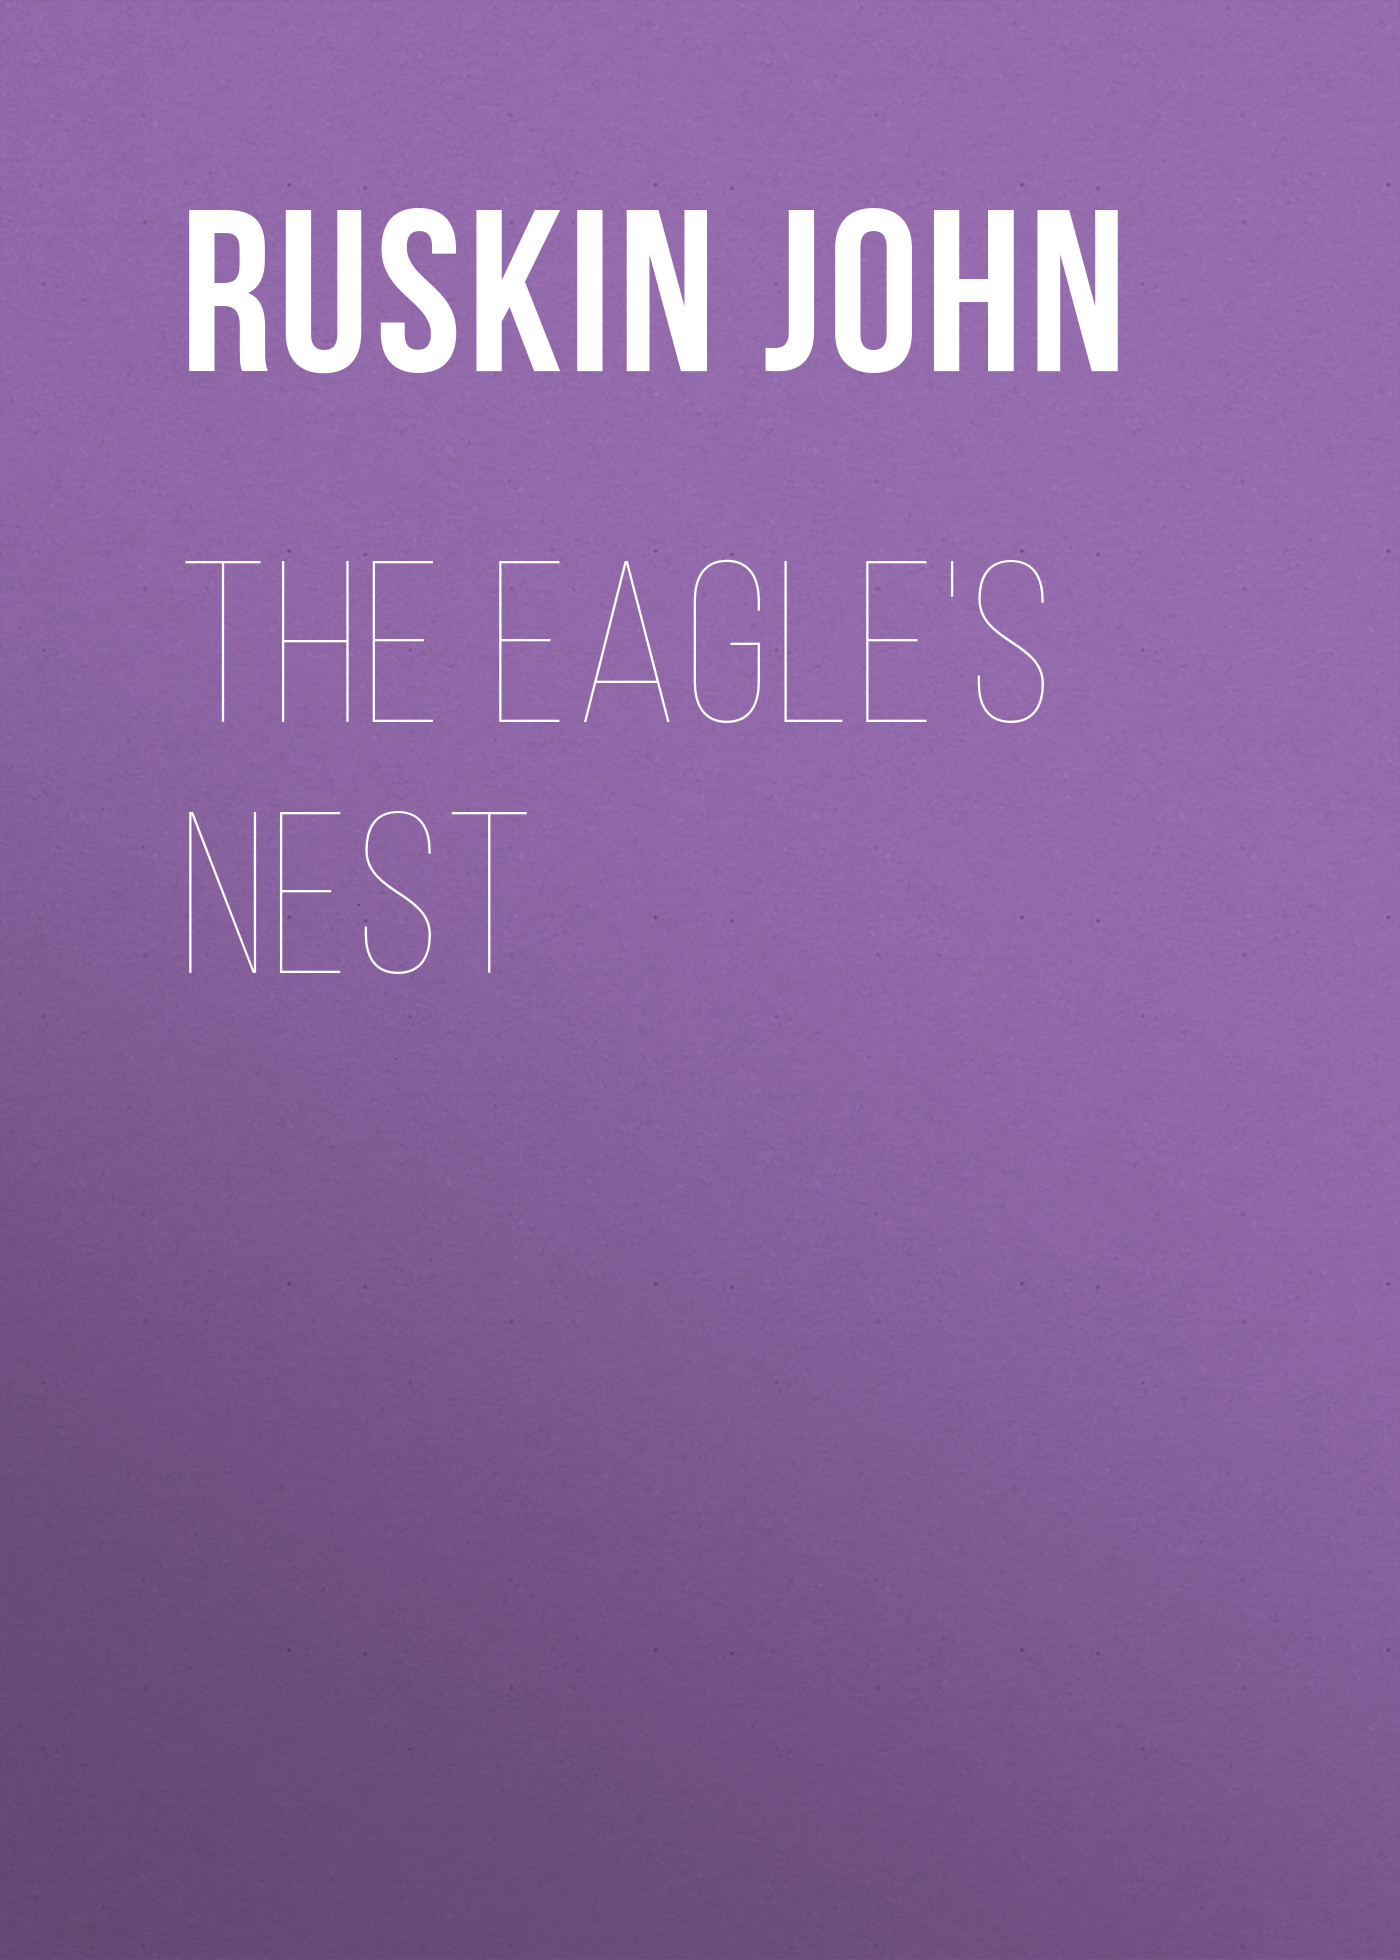 Книга The Eagle's Nest из серии , созданная John Ruskin, может относится к жанру Зарубежная старинная литература, Зарубежная прикладная и научно-популярная литература, Литература 19 века, Изобразительное искусство, фотография. Стоимость электронной книги The Eagle's Nest с идентификатором 34841070 составляет 0 руб.